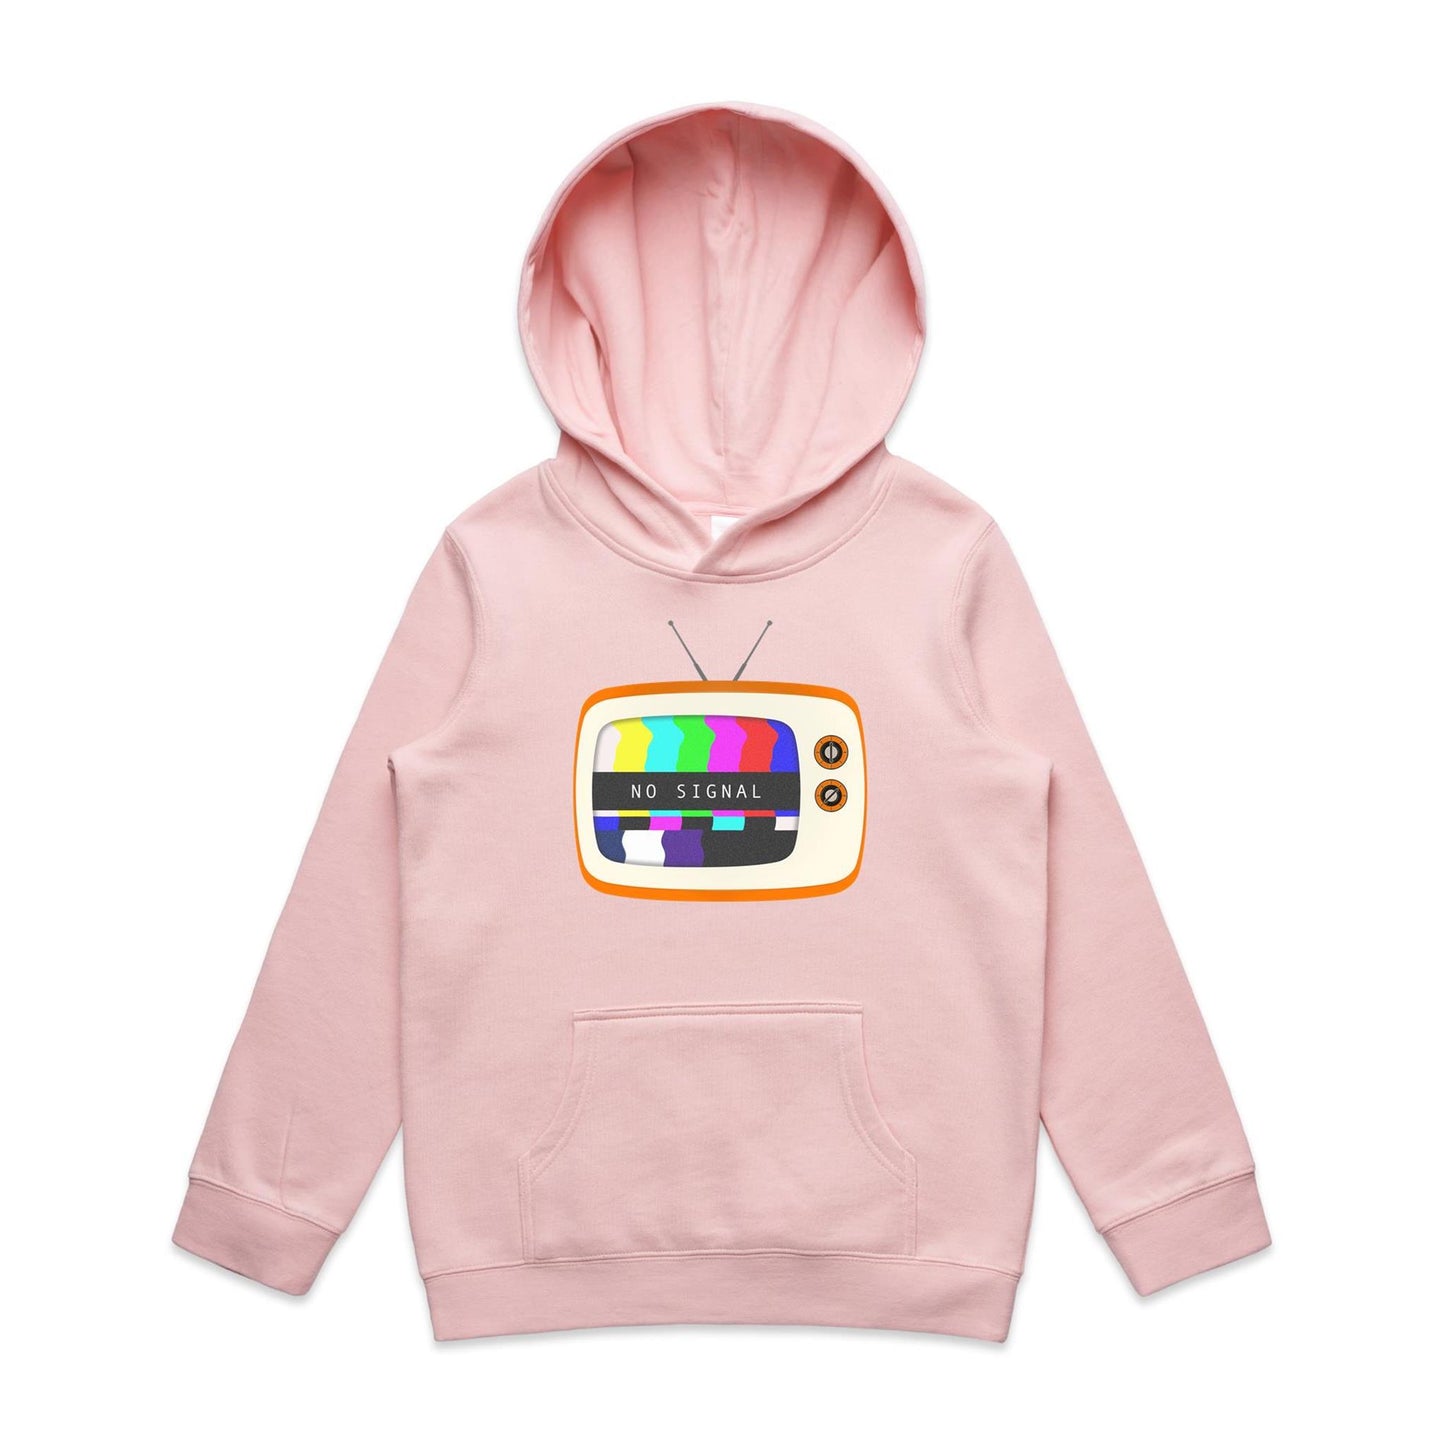 Retro TV - Youth Supply Hood Pink Kids Hoodie